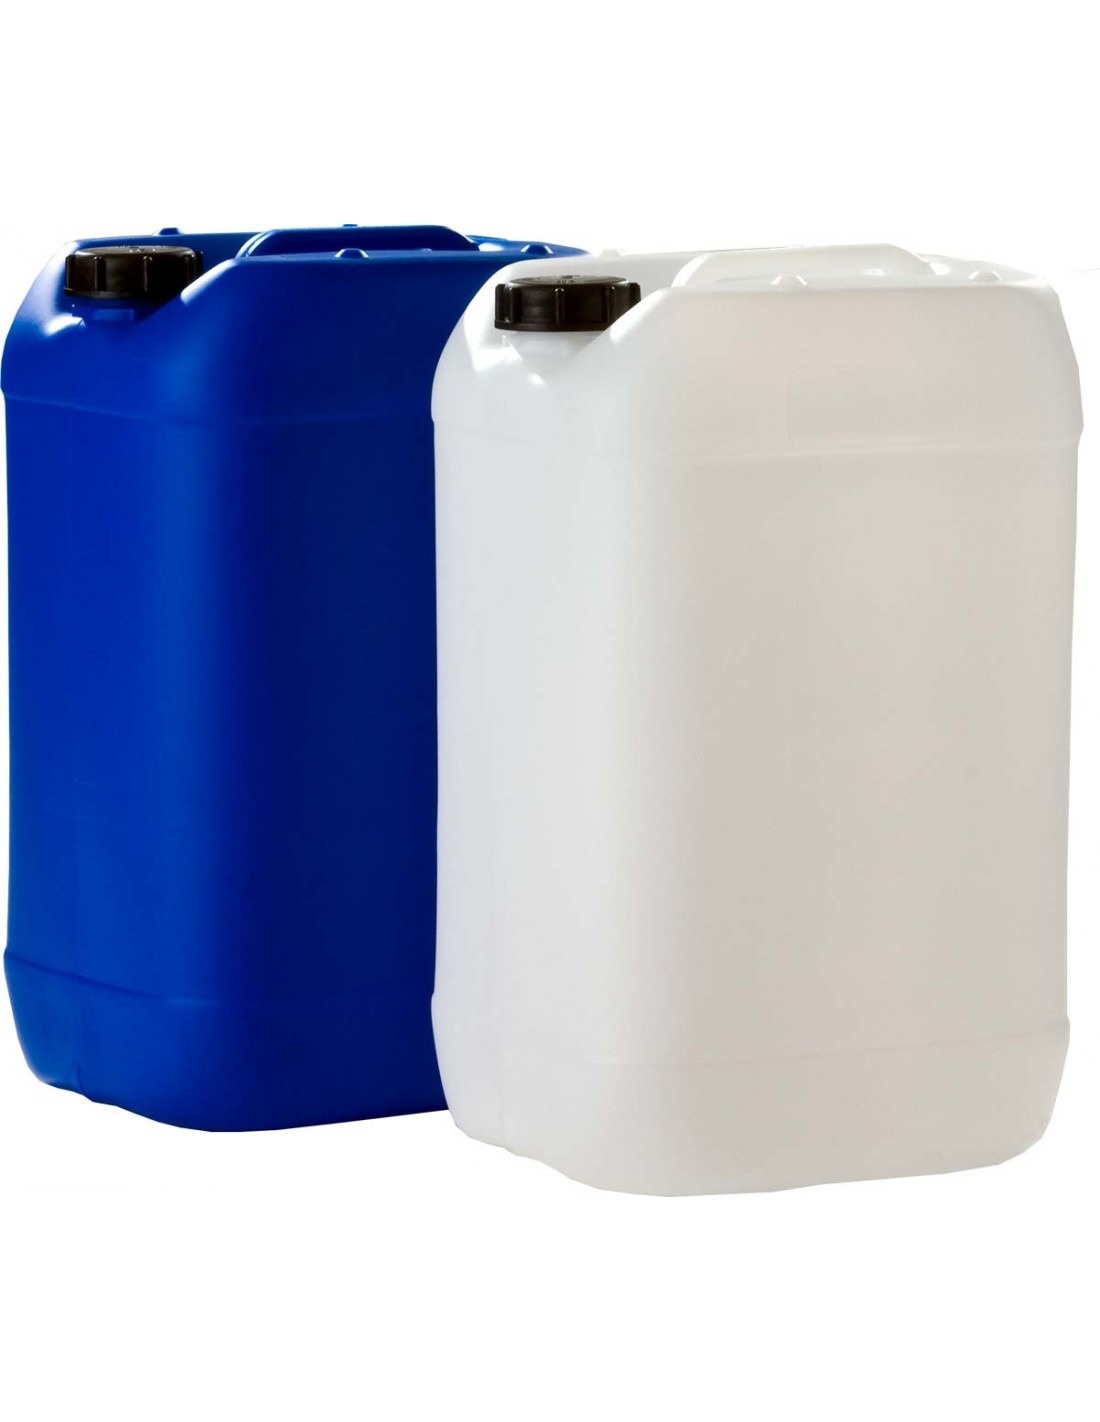 Kunststoff Kanister blau 25 Liter UN stapelbar mit Auslaufhahn DIN 51